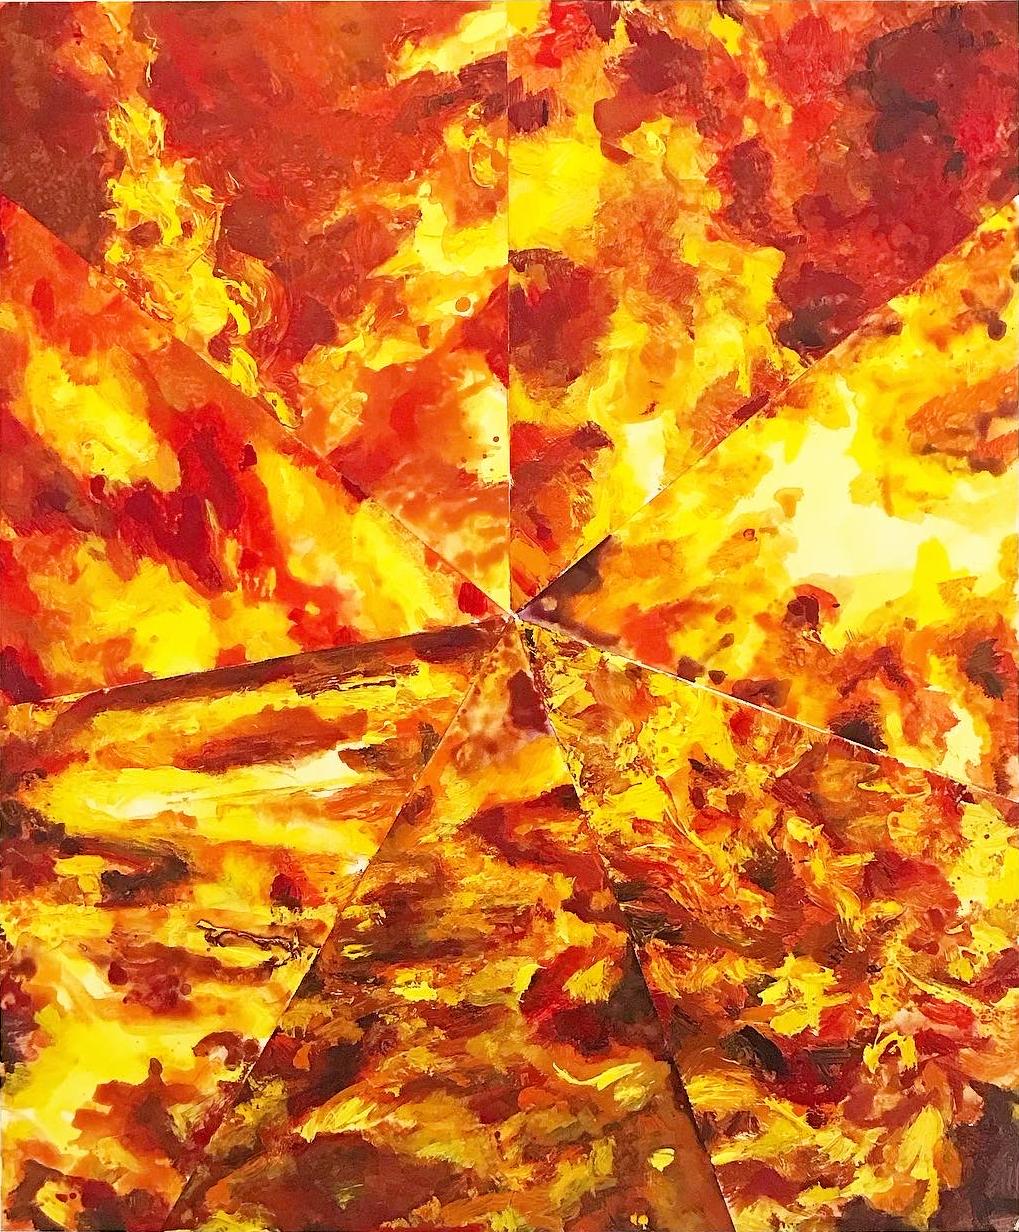 Abstract Painting Mat Tomezsko - Sept feus : peinture géométrique abstraite d'un feu en jaune, rouge et orange